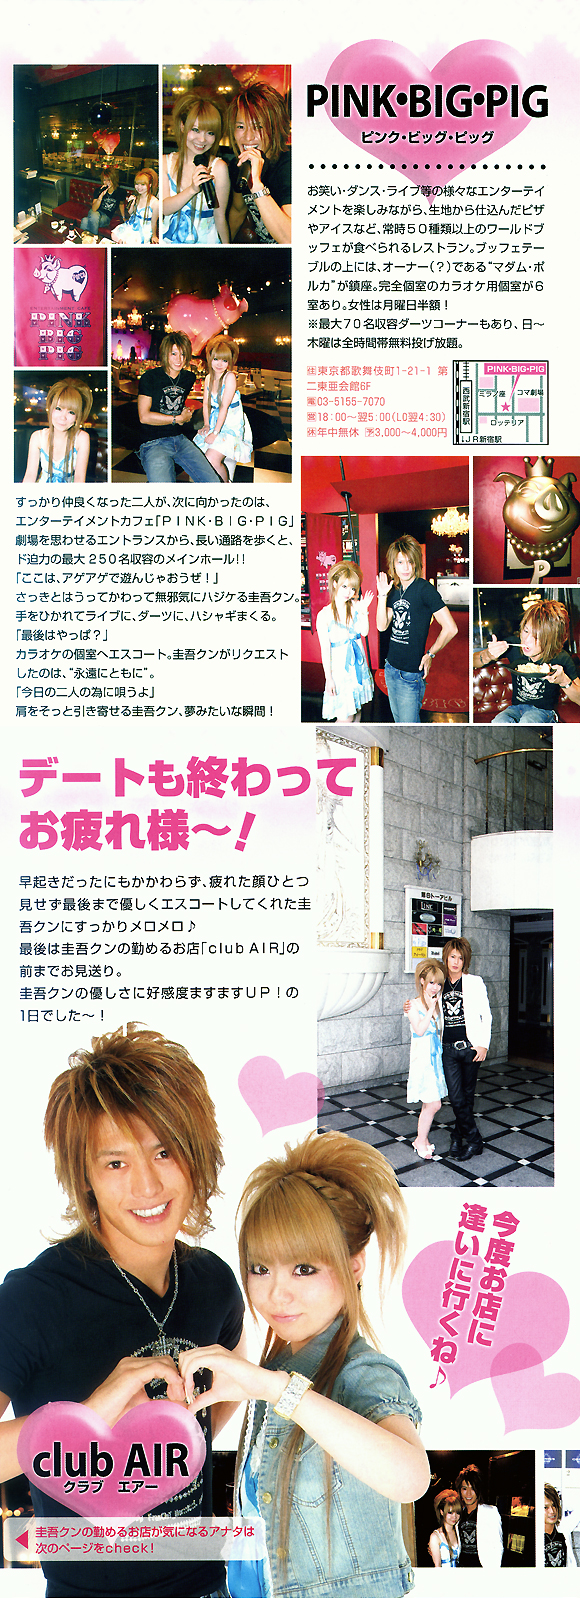 歌舞伎町のホストクラブ、エアーグループの本店、AIRの月嶋圭吾が雑誌に掲載されました。